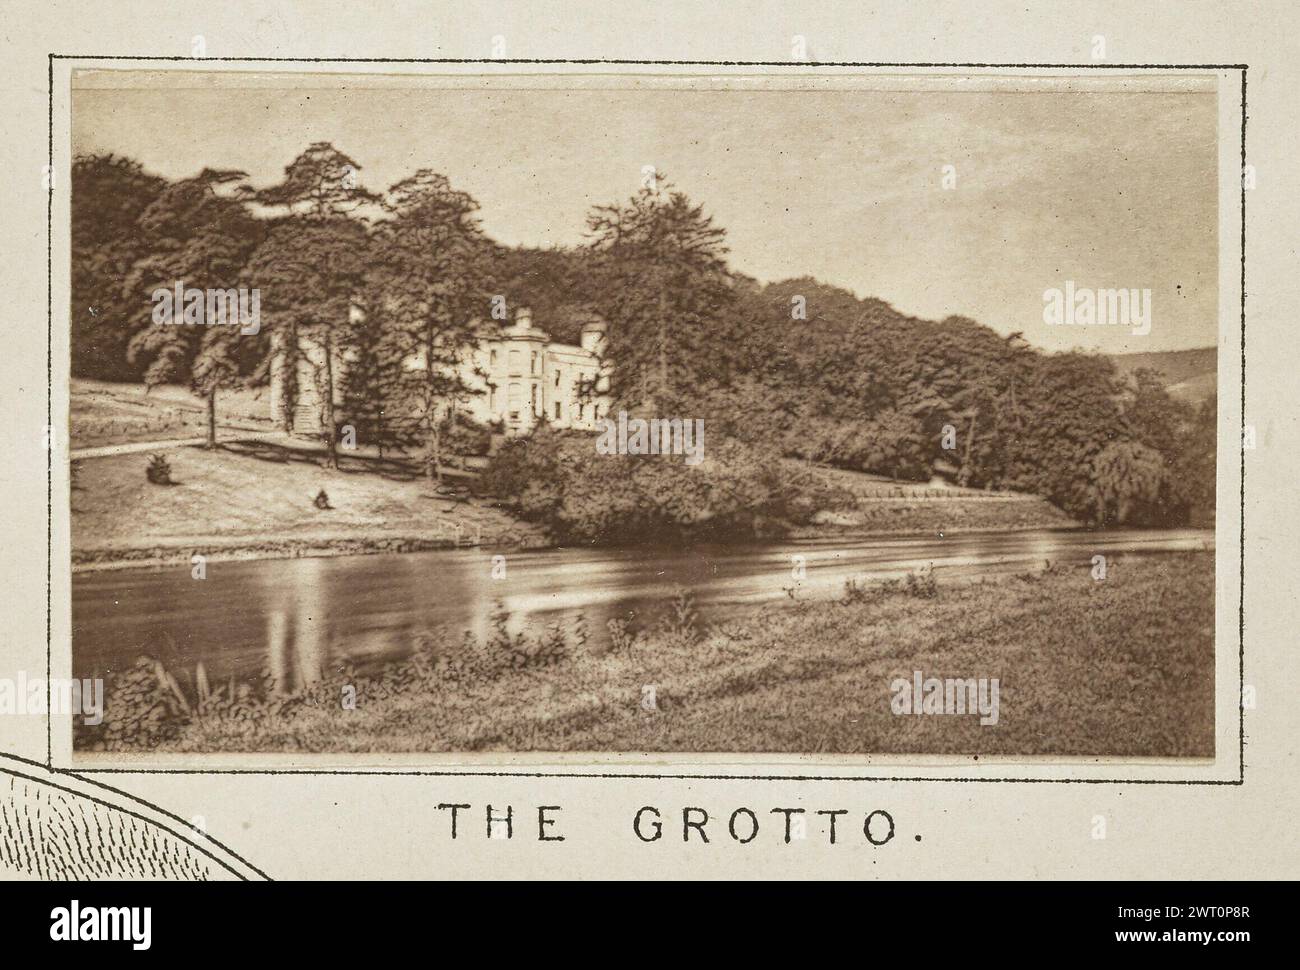 Die Grotte. Henry W. Taunt, Fotograf (britischer Fotograf, 1842–1922) um 1886 eines von drei Fotos, die eine gedruckte Karte von Streatley, Goring und der Umgebung entlang der Themse illustrieren. Das Foto zeigt einen Blick auf das Grotto House oder die Basildon Grotto von der anderen Seite des Flusses. Bäume und Büsche behindern teilweise die Sicht auf das Haus. (Recto, Mount) unten in der Mitte, unter dem Bild, in schwarzer Tinte gedruckt: „THE GROTTO“. Stockfoto